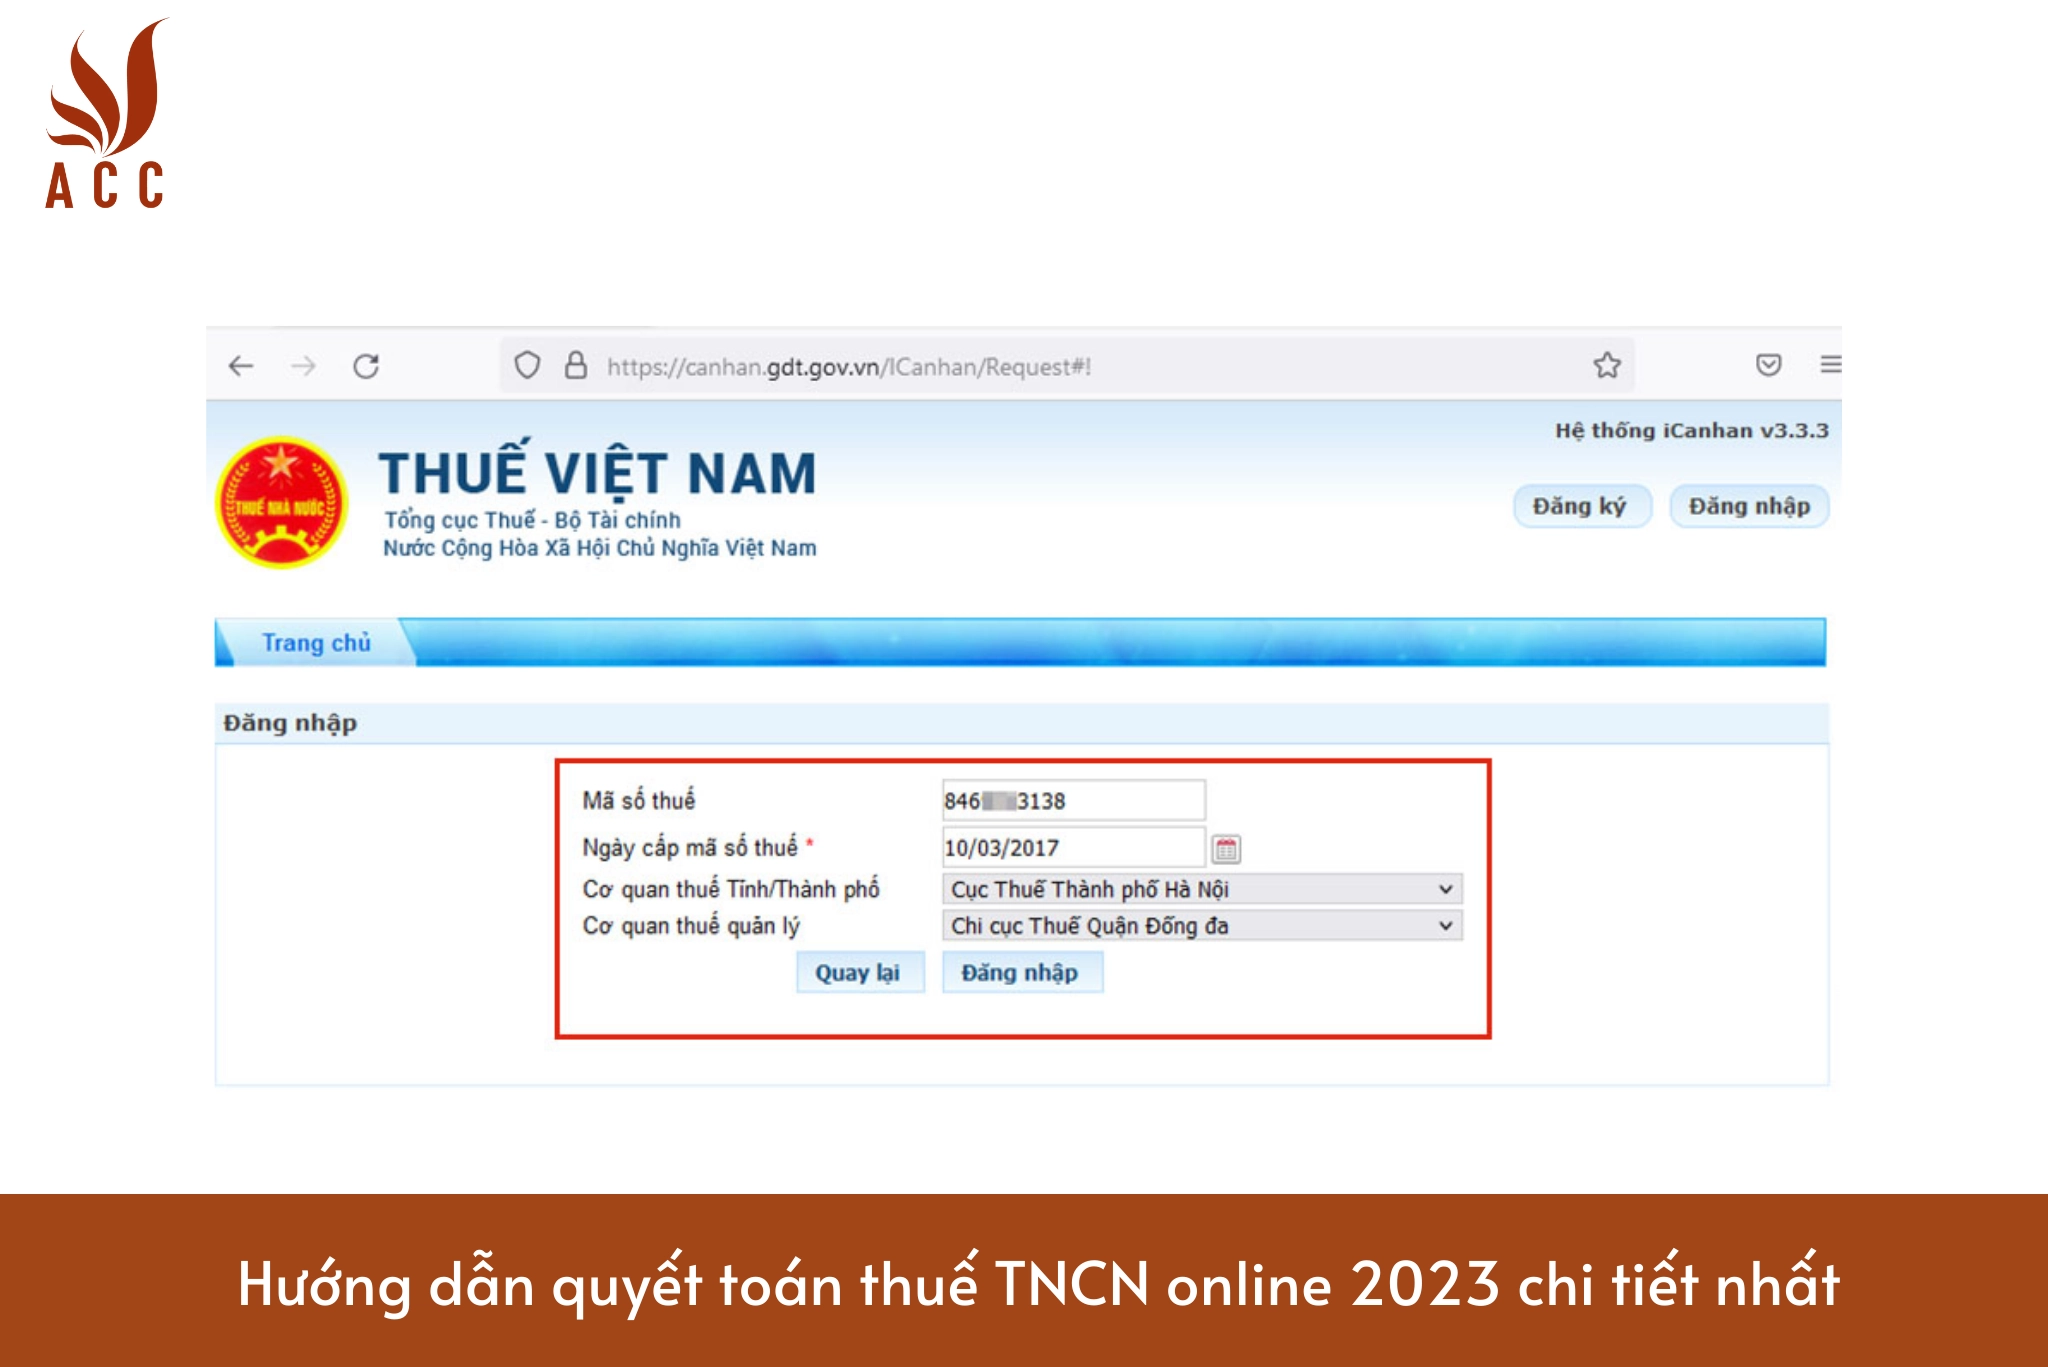 Hướng dẫn quyết toán thuế TNCN online 2023 chi tiết nhất